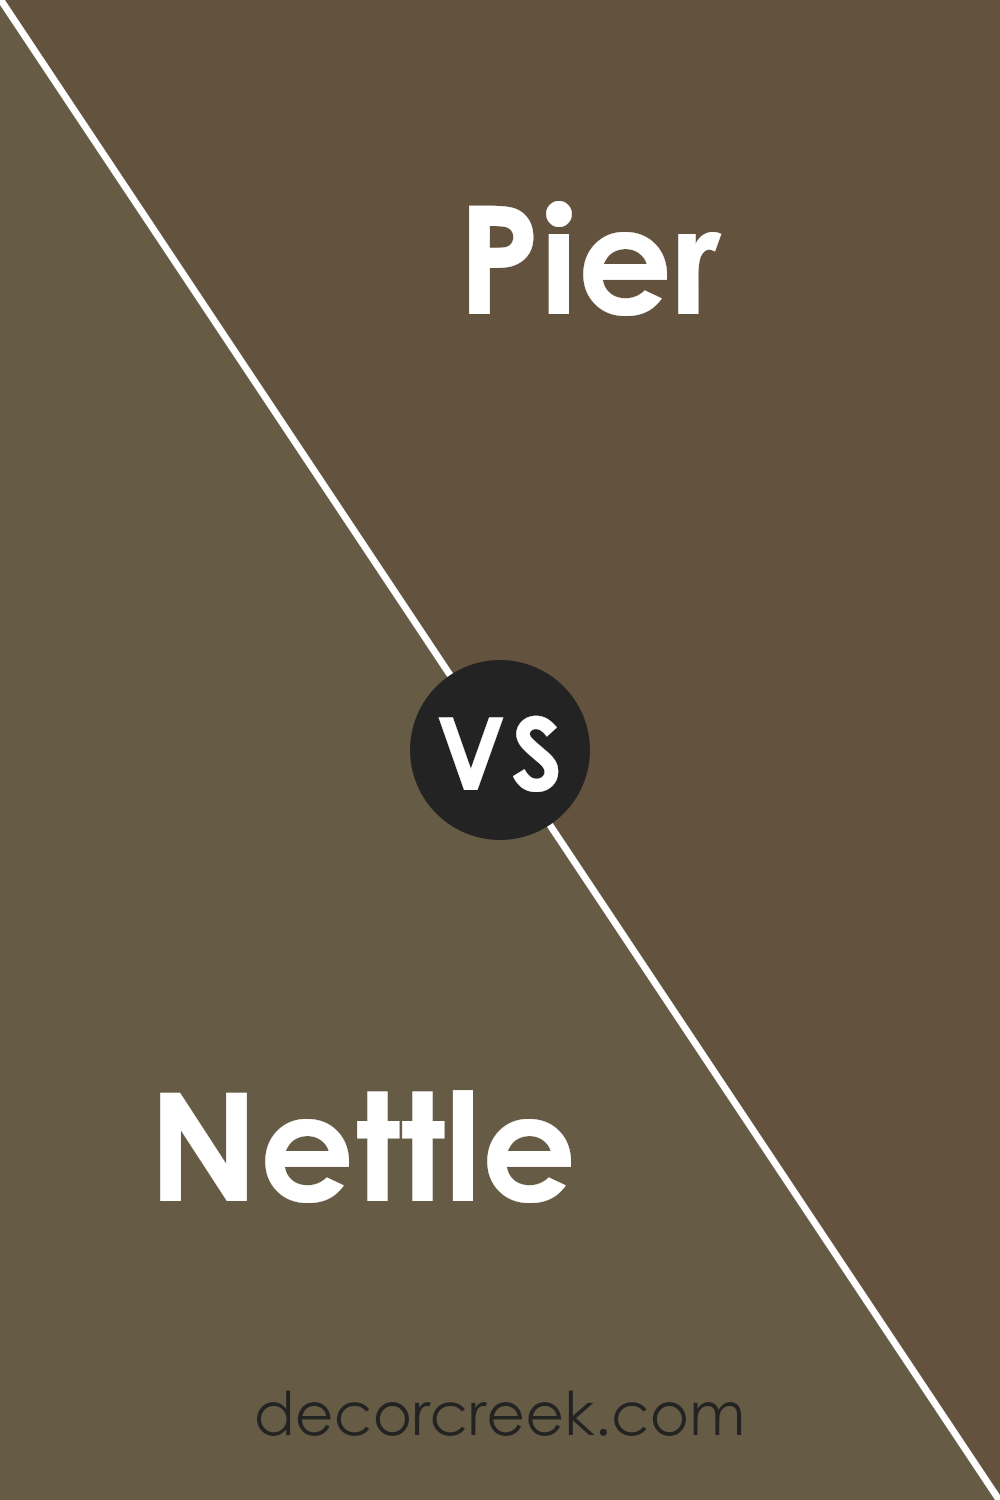 nettle_sw_9535_vs_pier_sw_7545